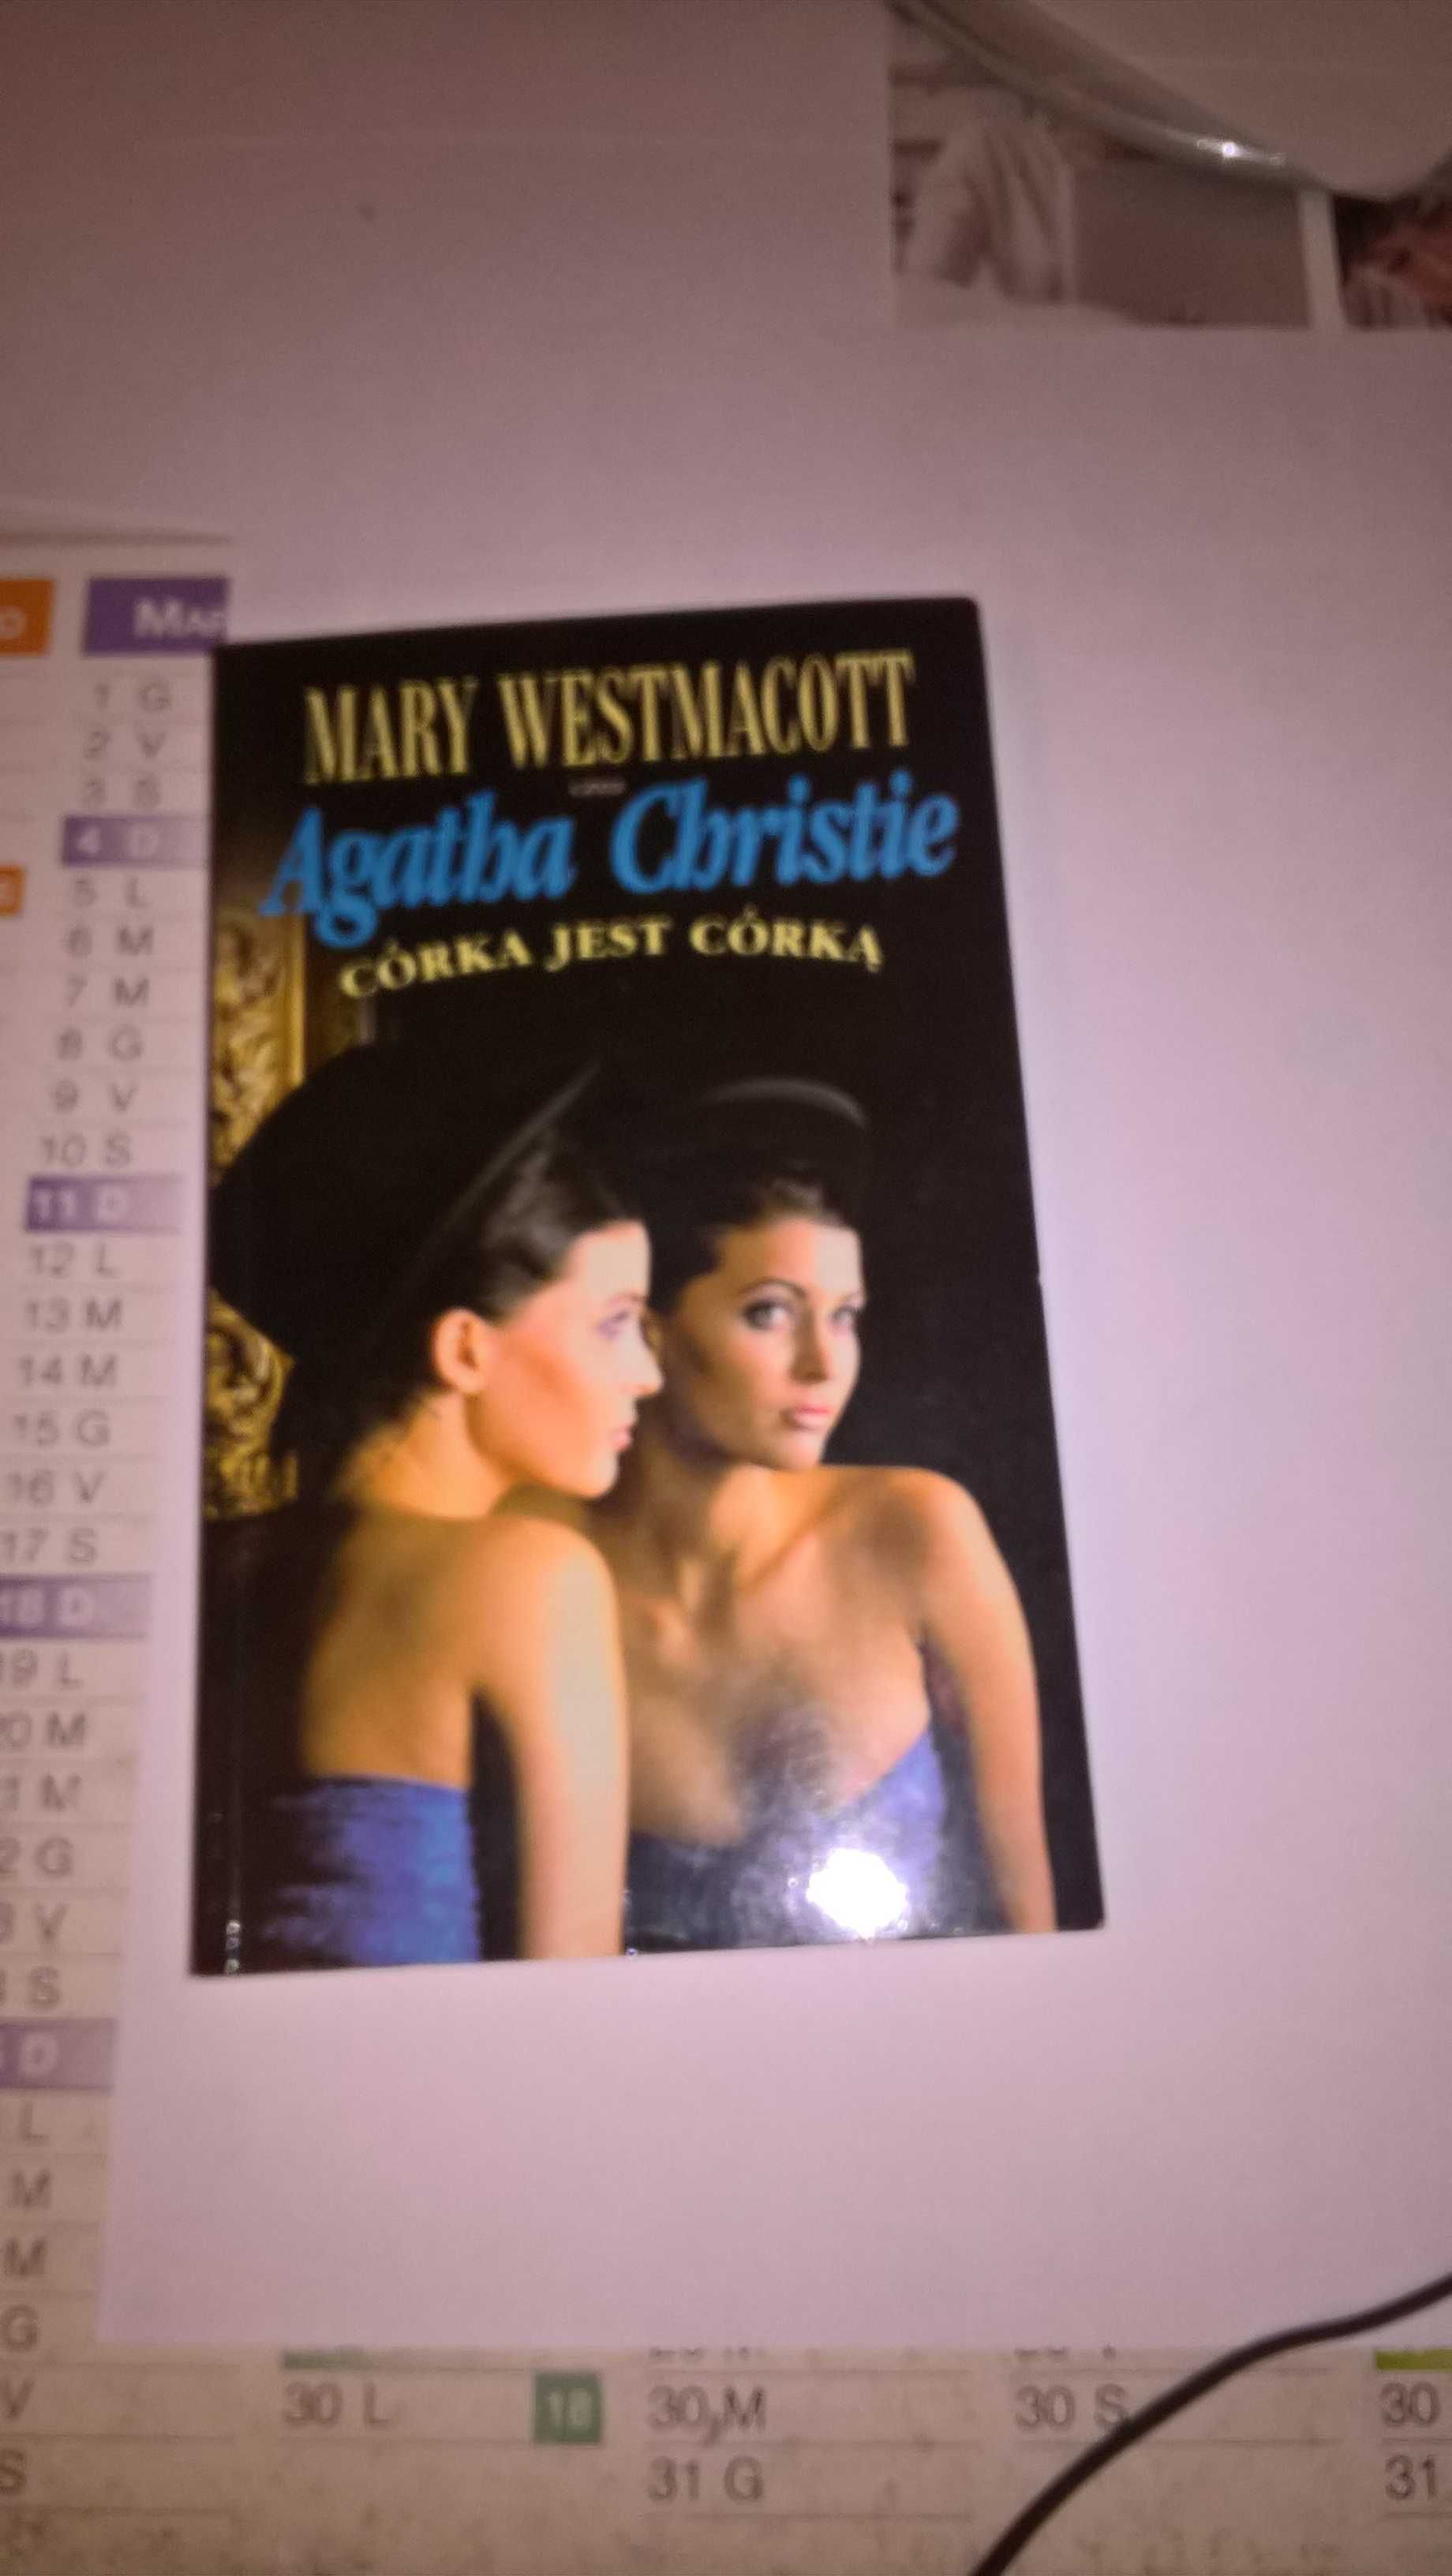 Córka jest córką  Mary Westmacott  czyli Agatha Christie